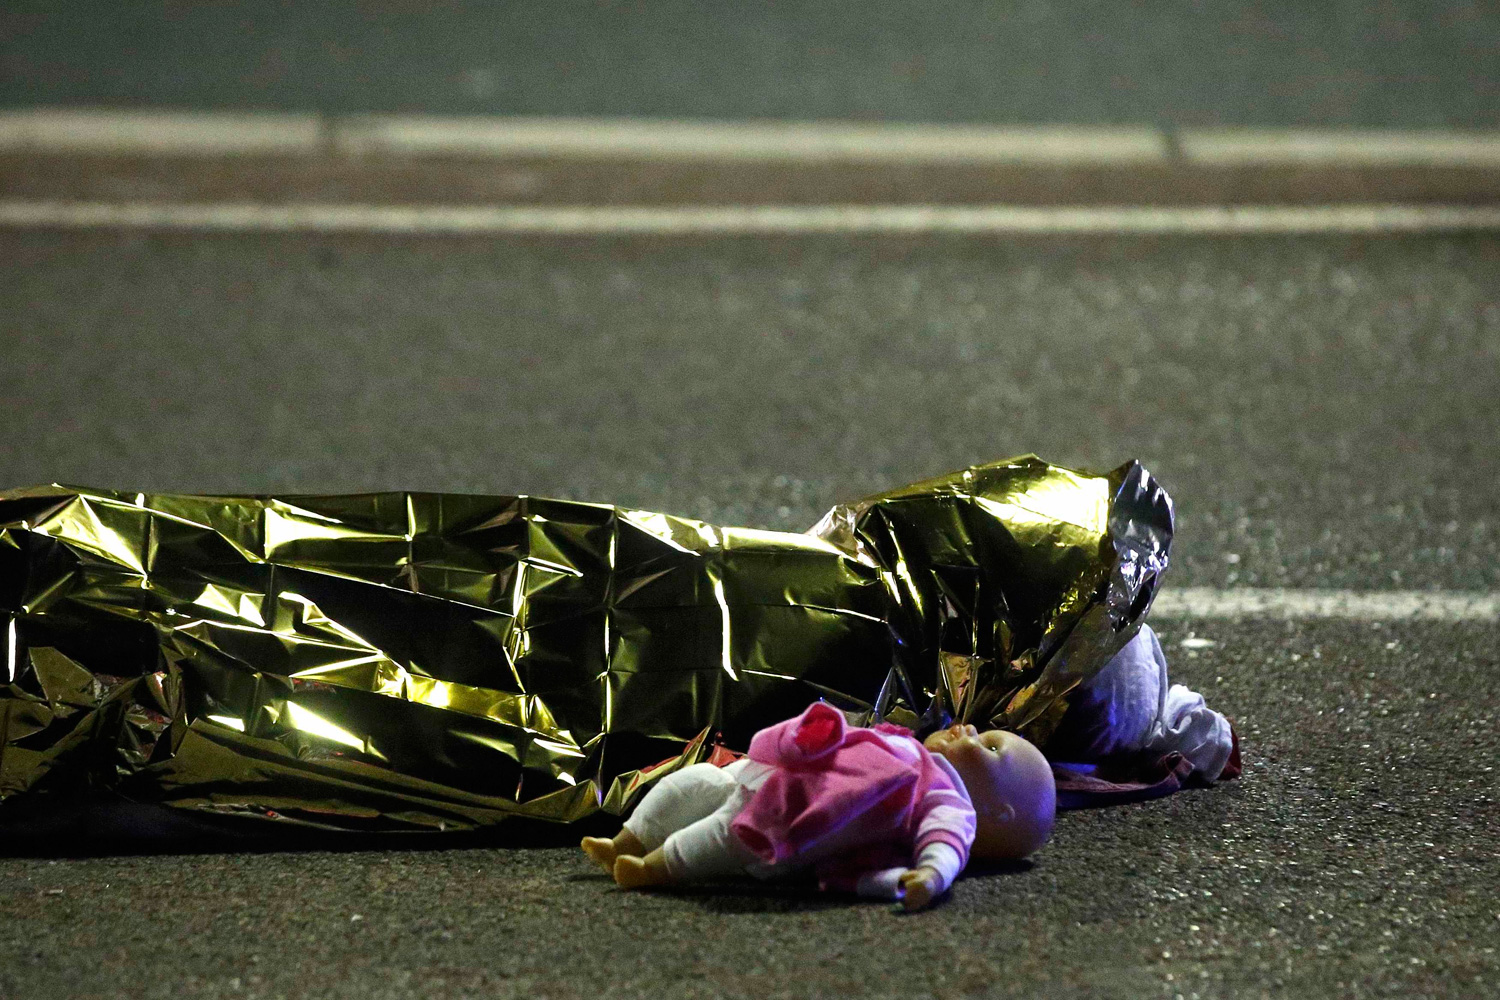 El mundo reacciona con indignación ante la “salvajada criminal” ocurrida en Niza